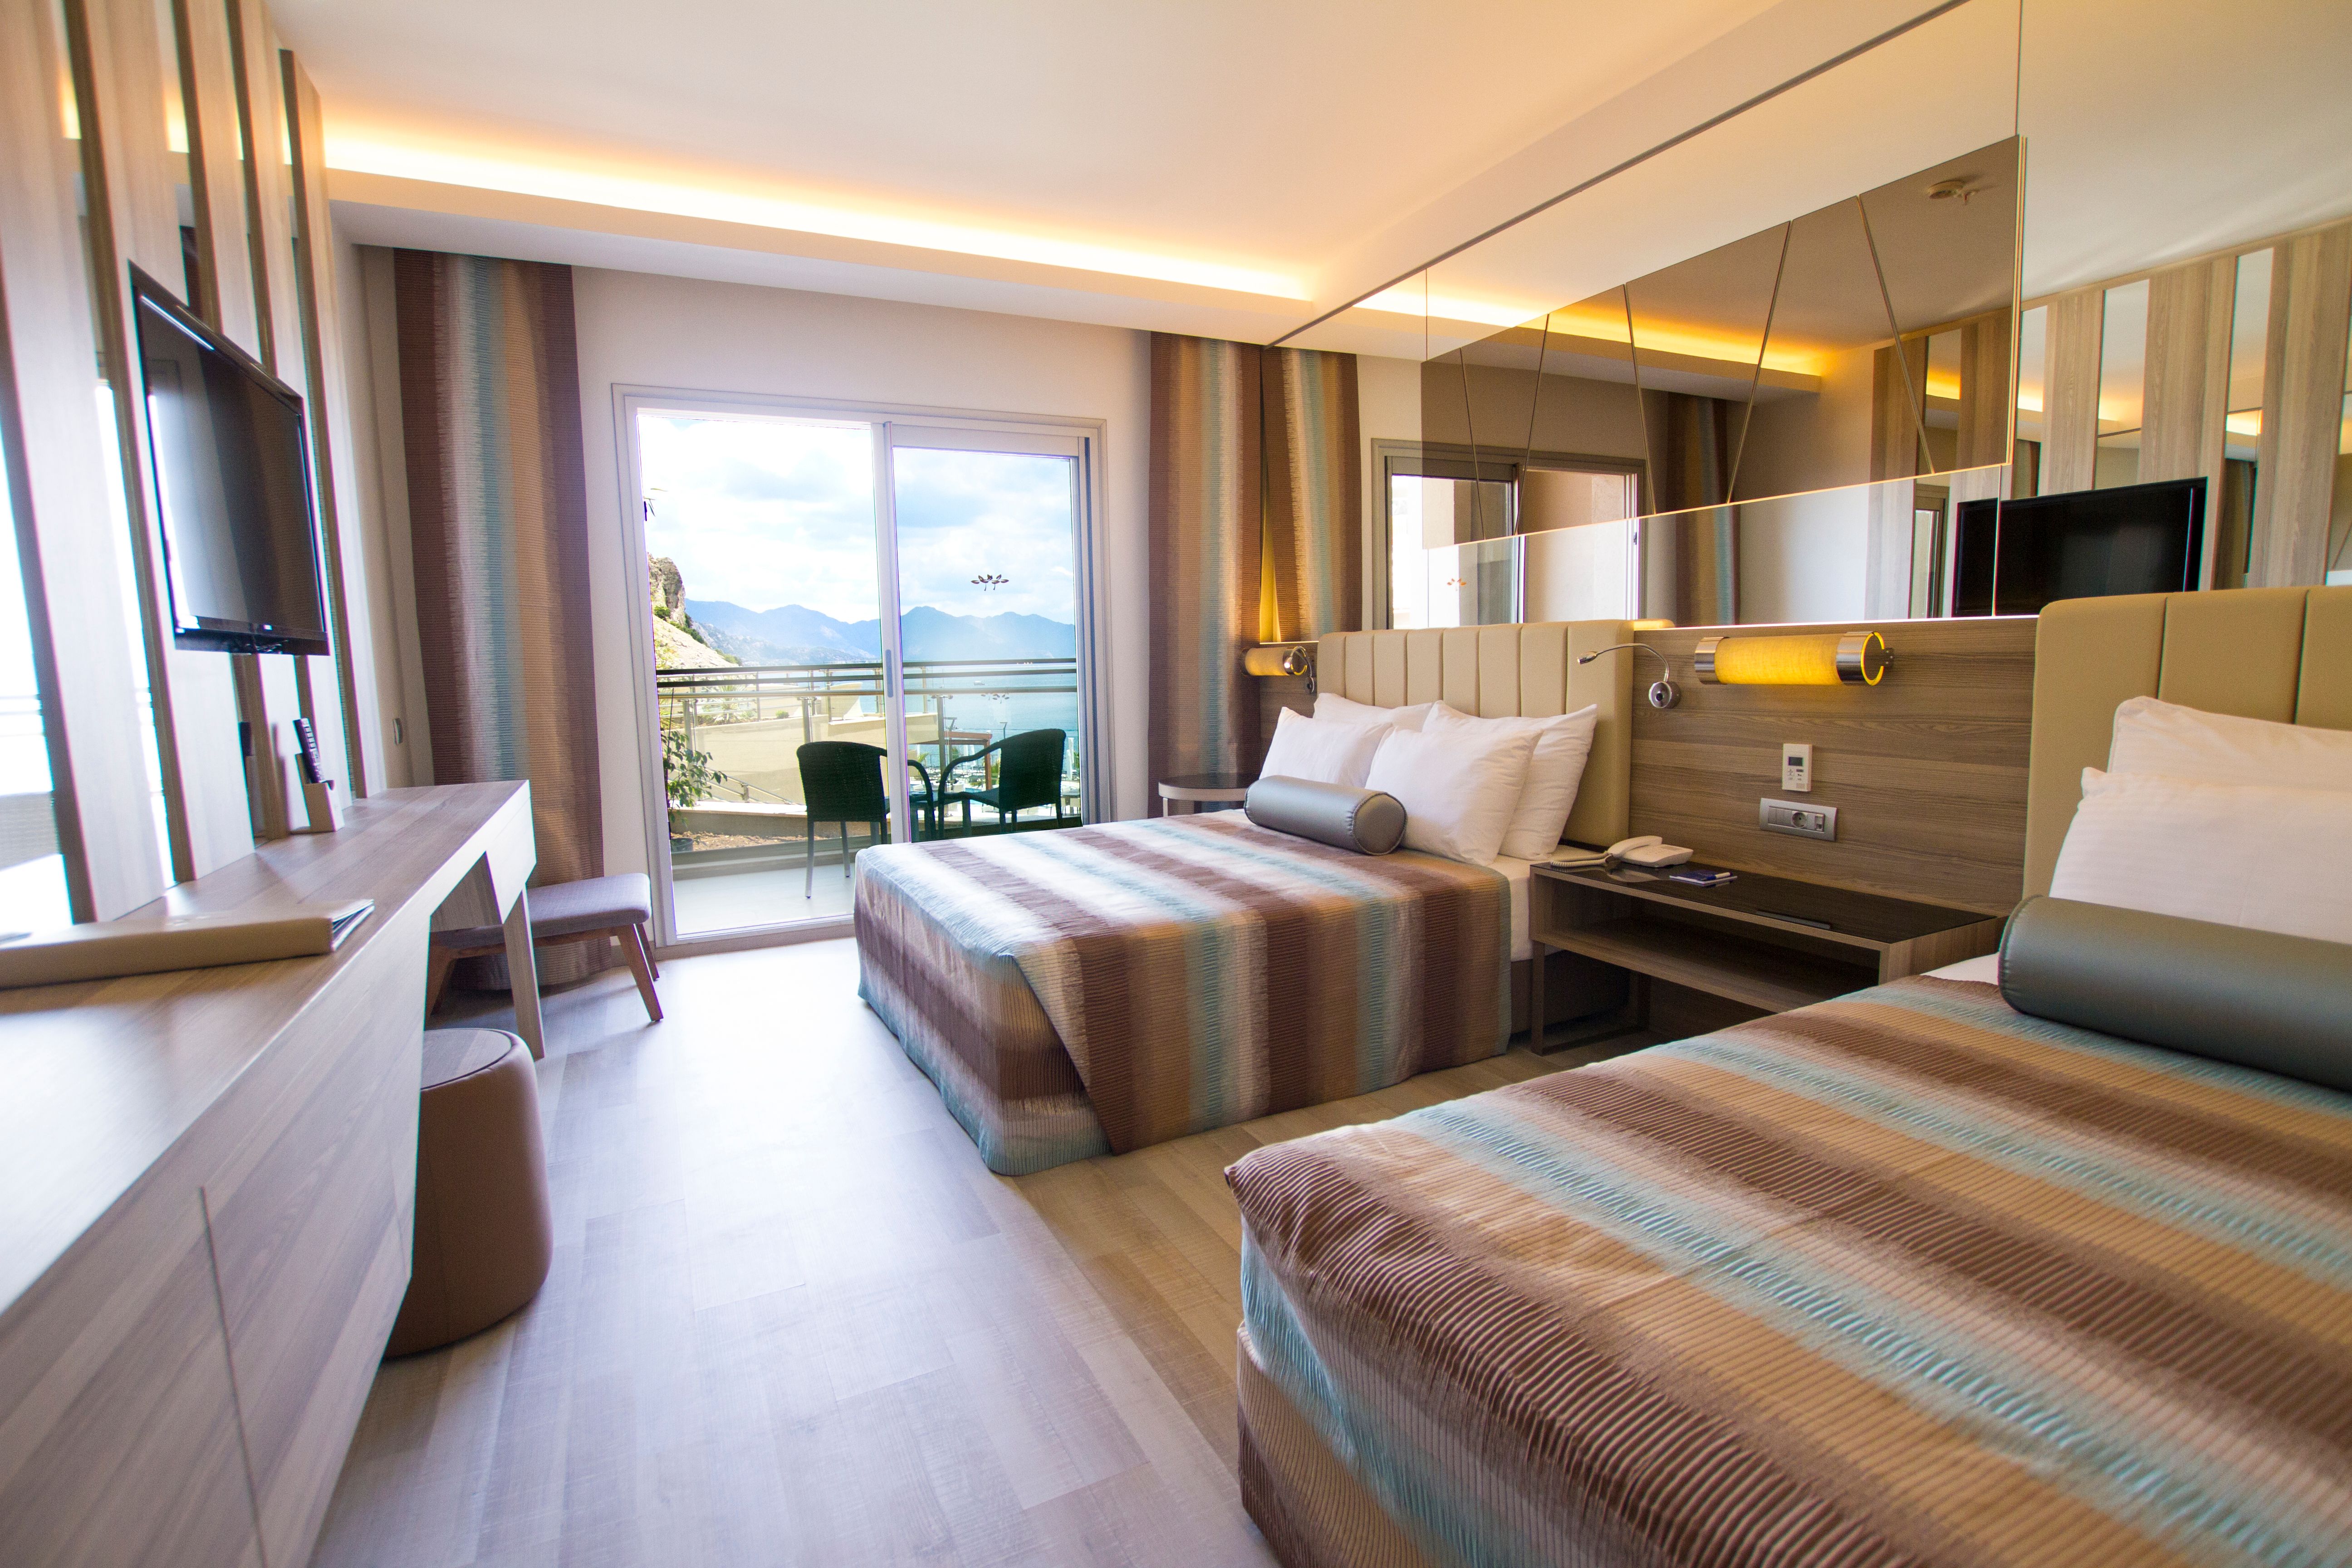 Turunç Premium Hotel Yandan  Deniz Manzaralı Standart Oda  